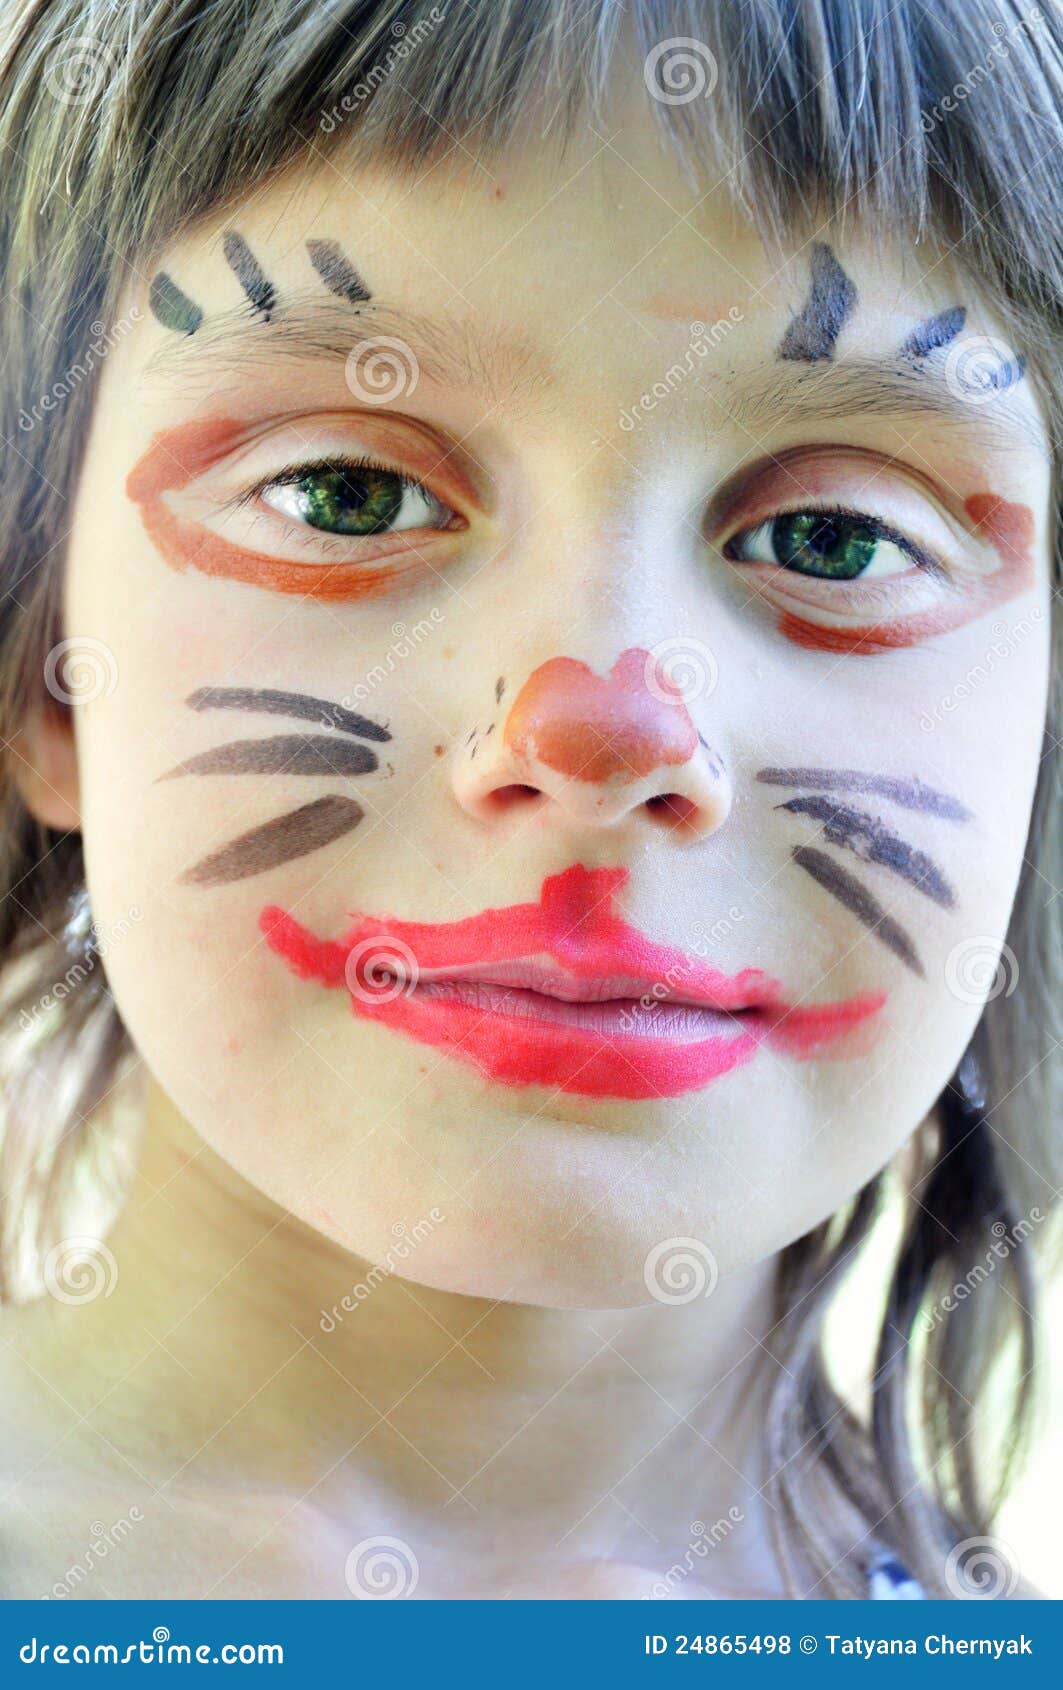 Enfant De Masque De Peinture De Visage Photo stock - Image du